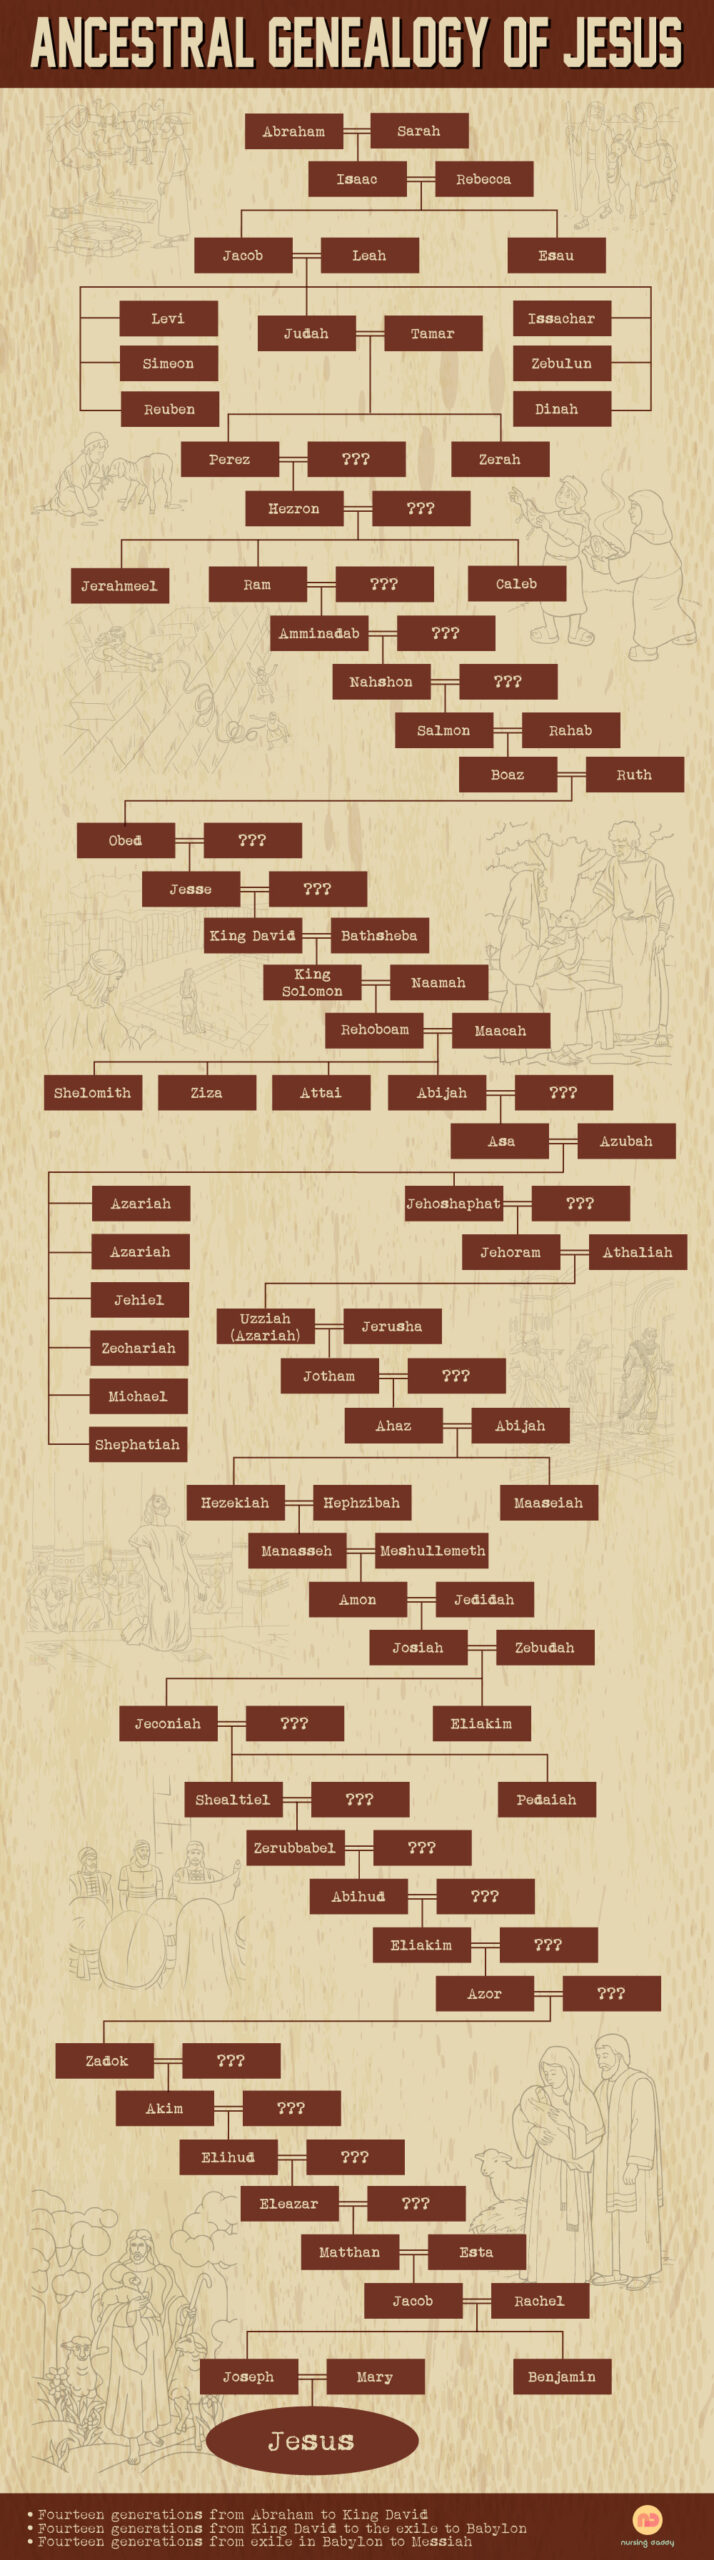 Ancestral Genealogy of Jesus